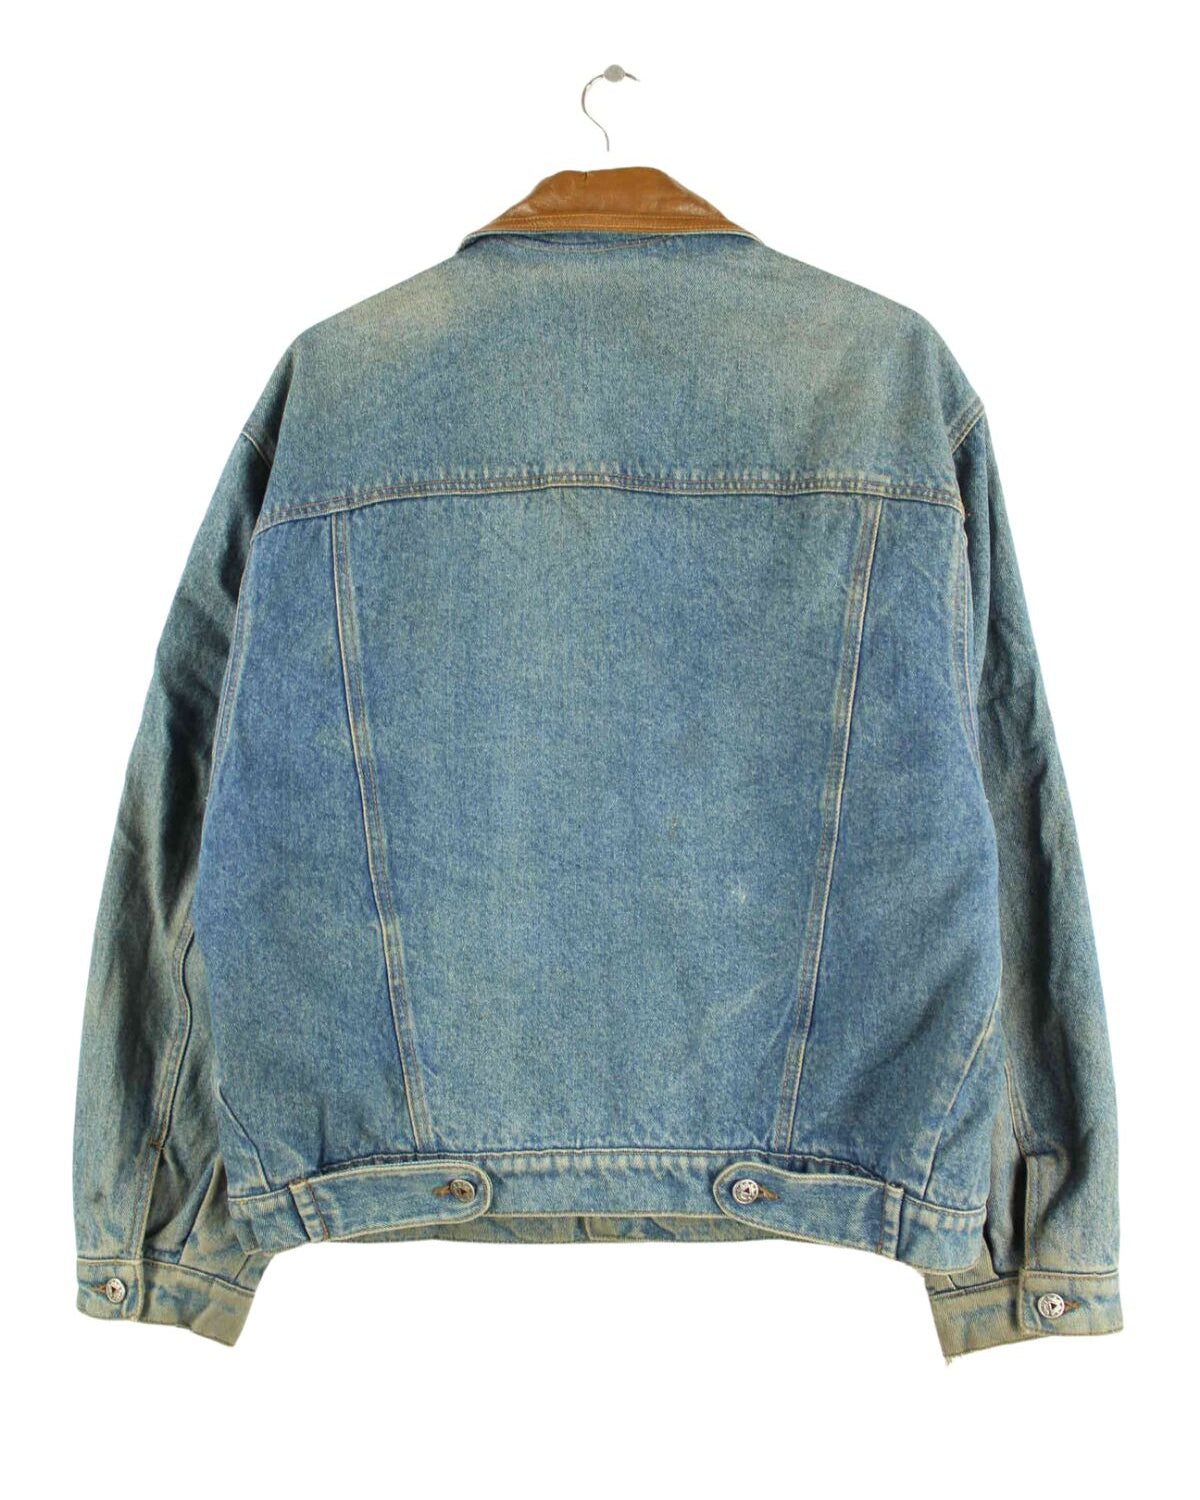 Vintage 80s Embroidered Jeans Jacke Blau L (back image)